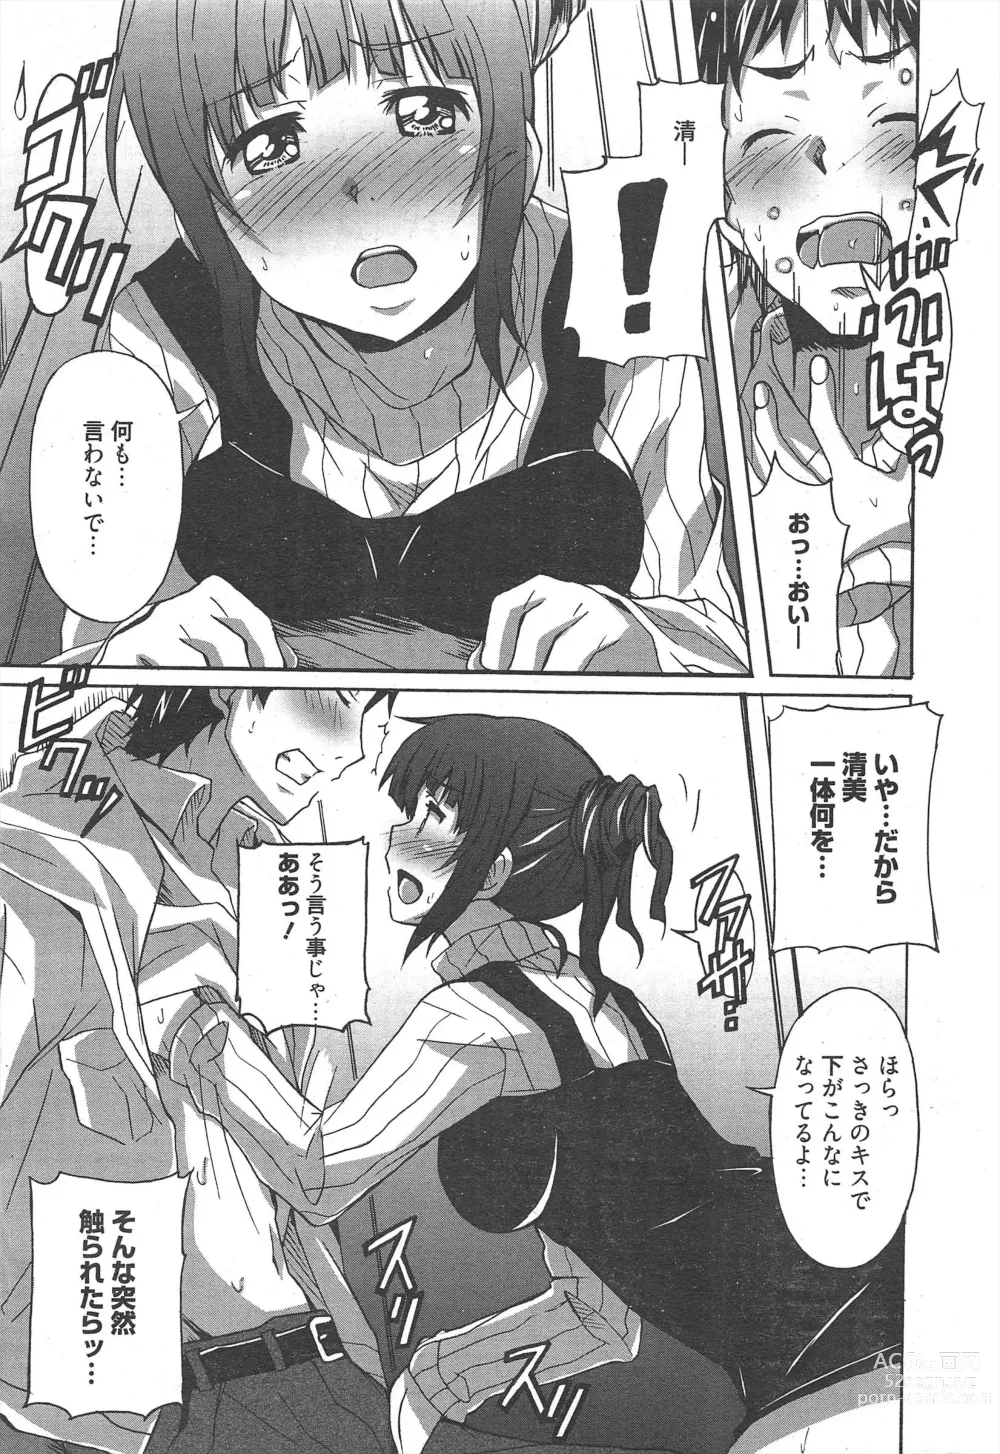 Page 13 of manga Manga Bangaichi 2013-03